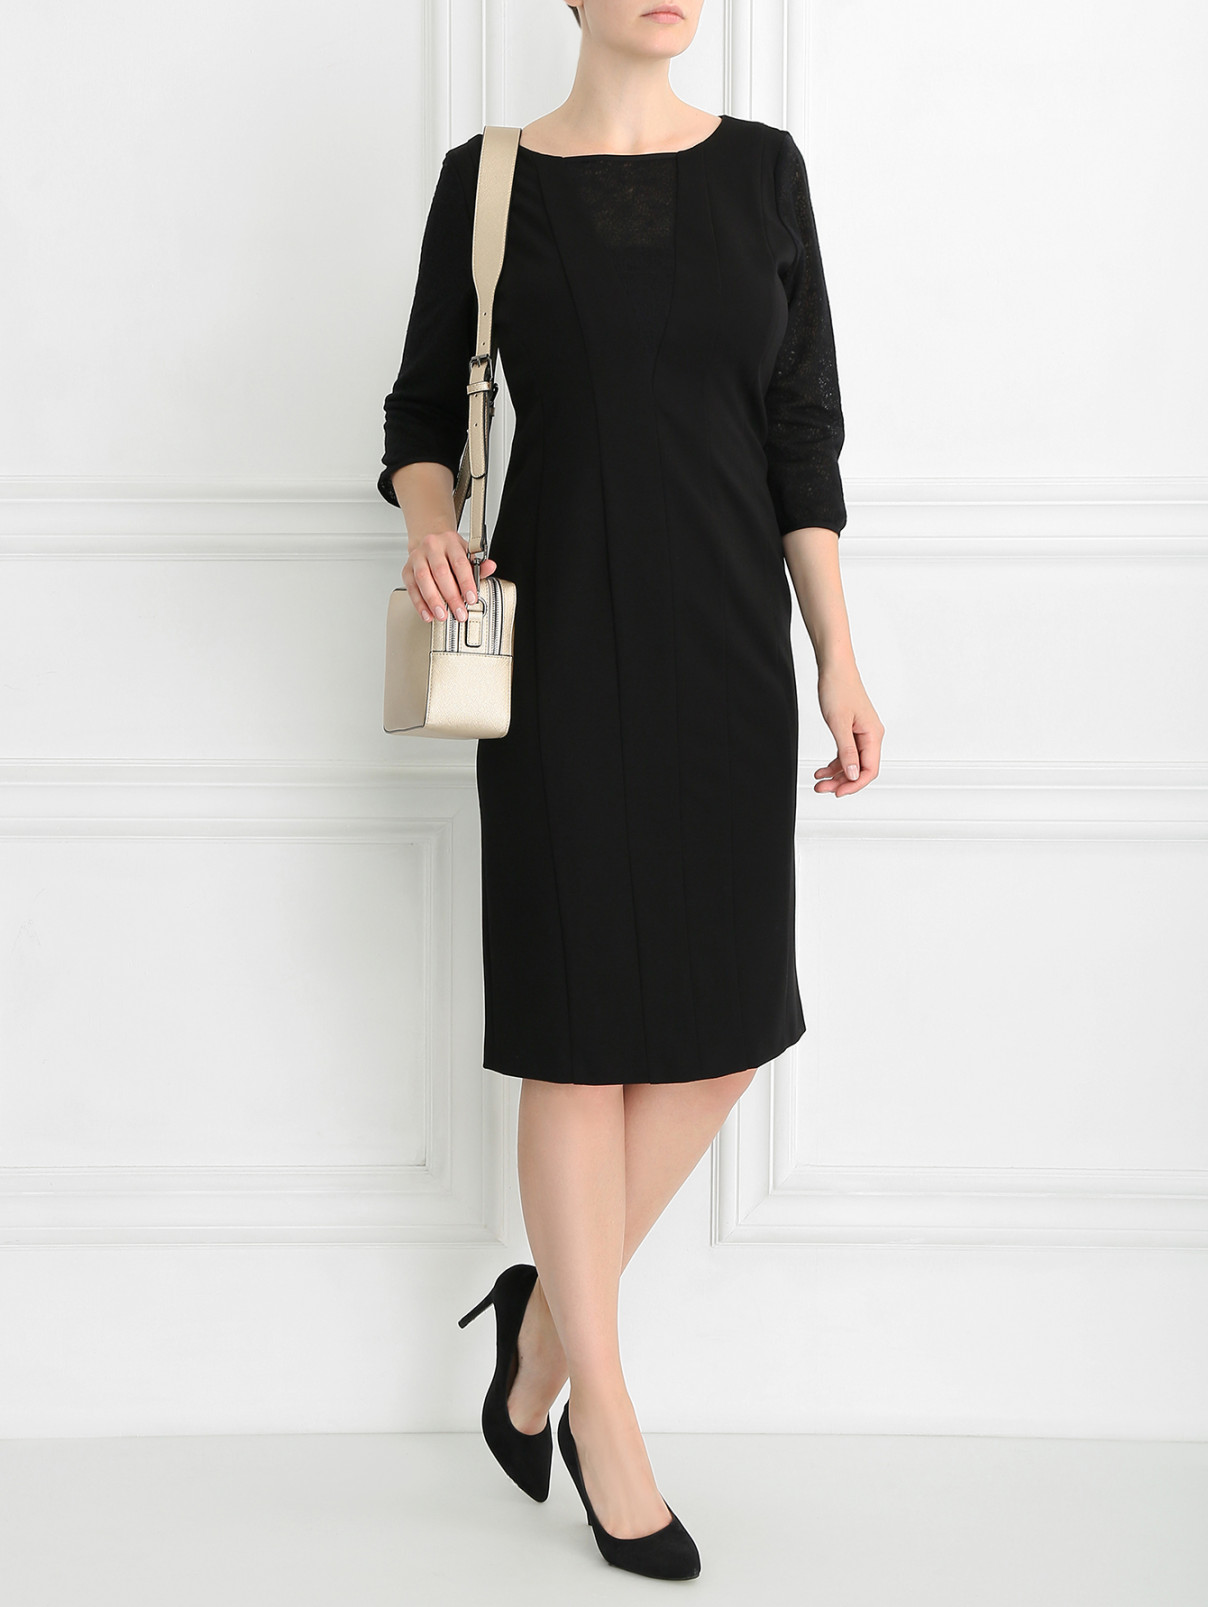 Платье с декоративными вставками Marina Rinaldi  –  Модель Общий вид  – Цвет:  Черный